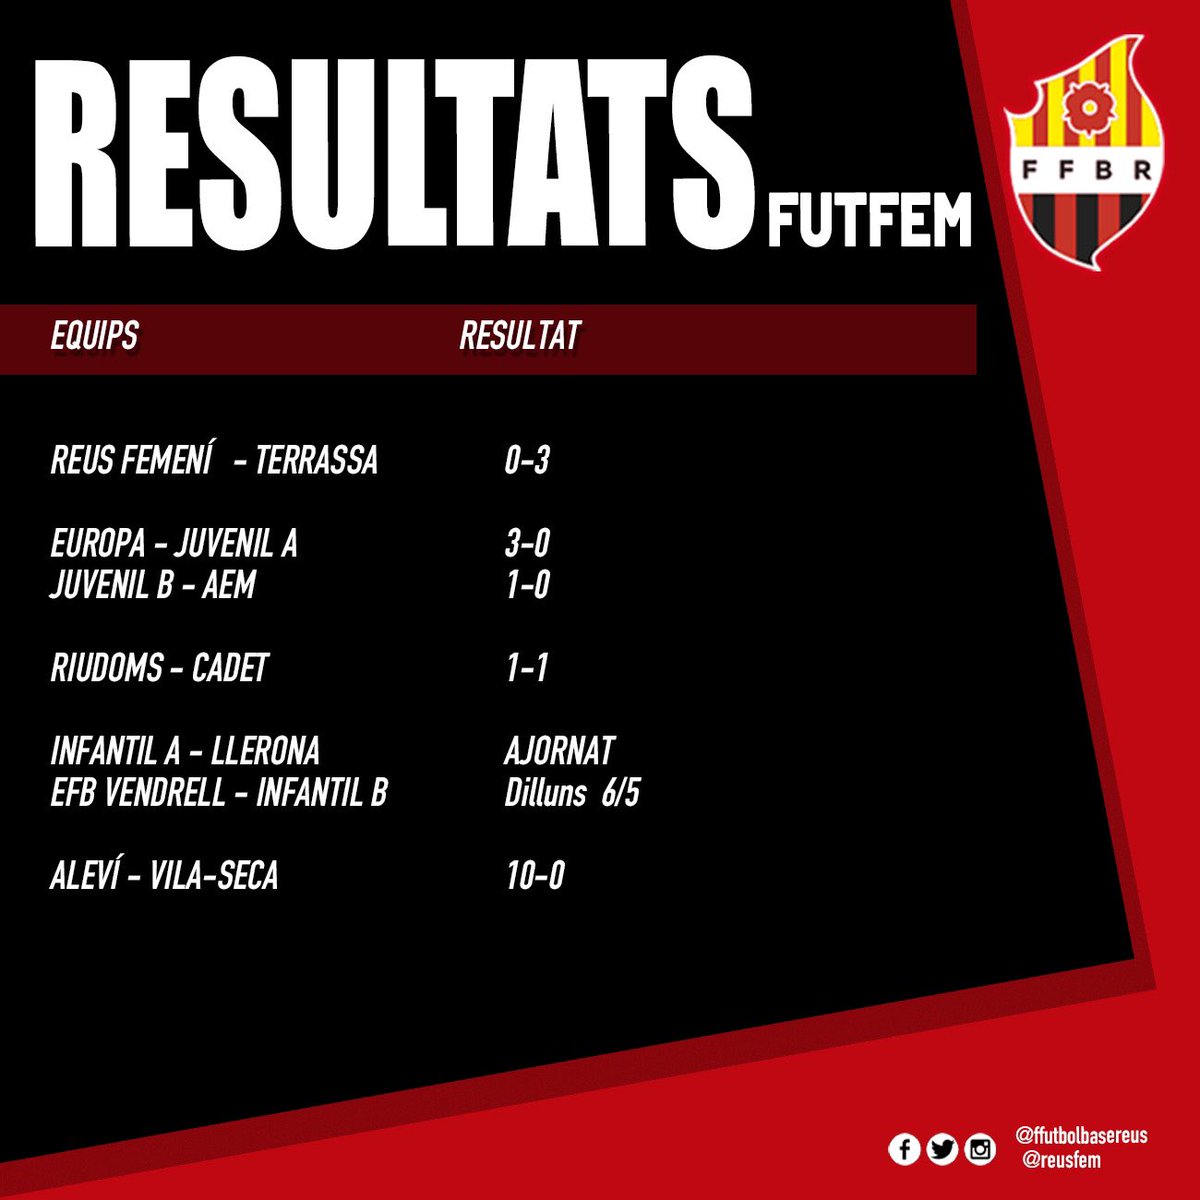 Resultats dels partits del futbol roig-i-negre d’aquest cap de setmana | 4 i 5 de maig 

#ffutbolbasereus #cfreusfem #reus #forçareus #reusfemení